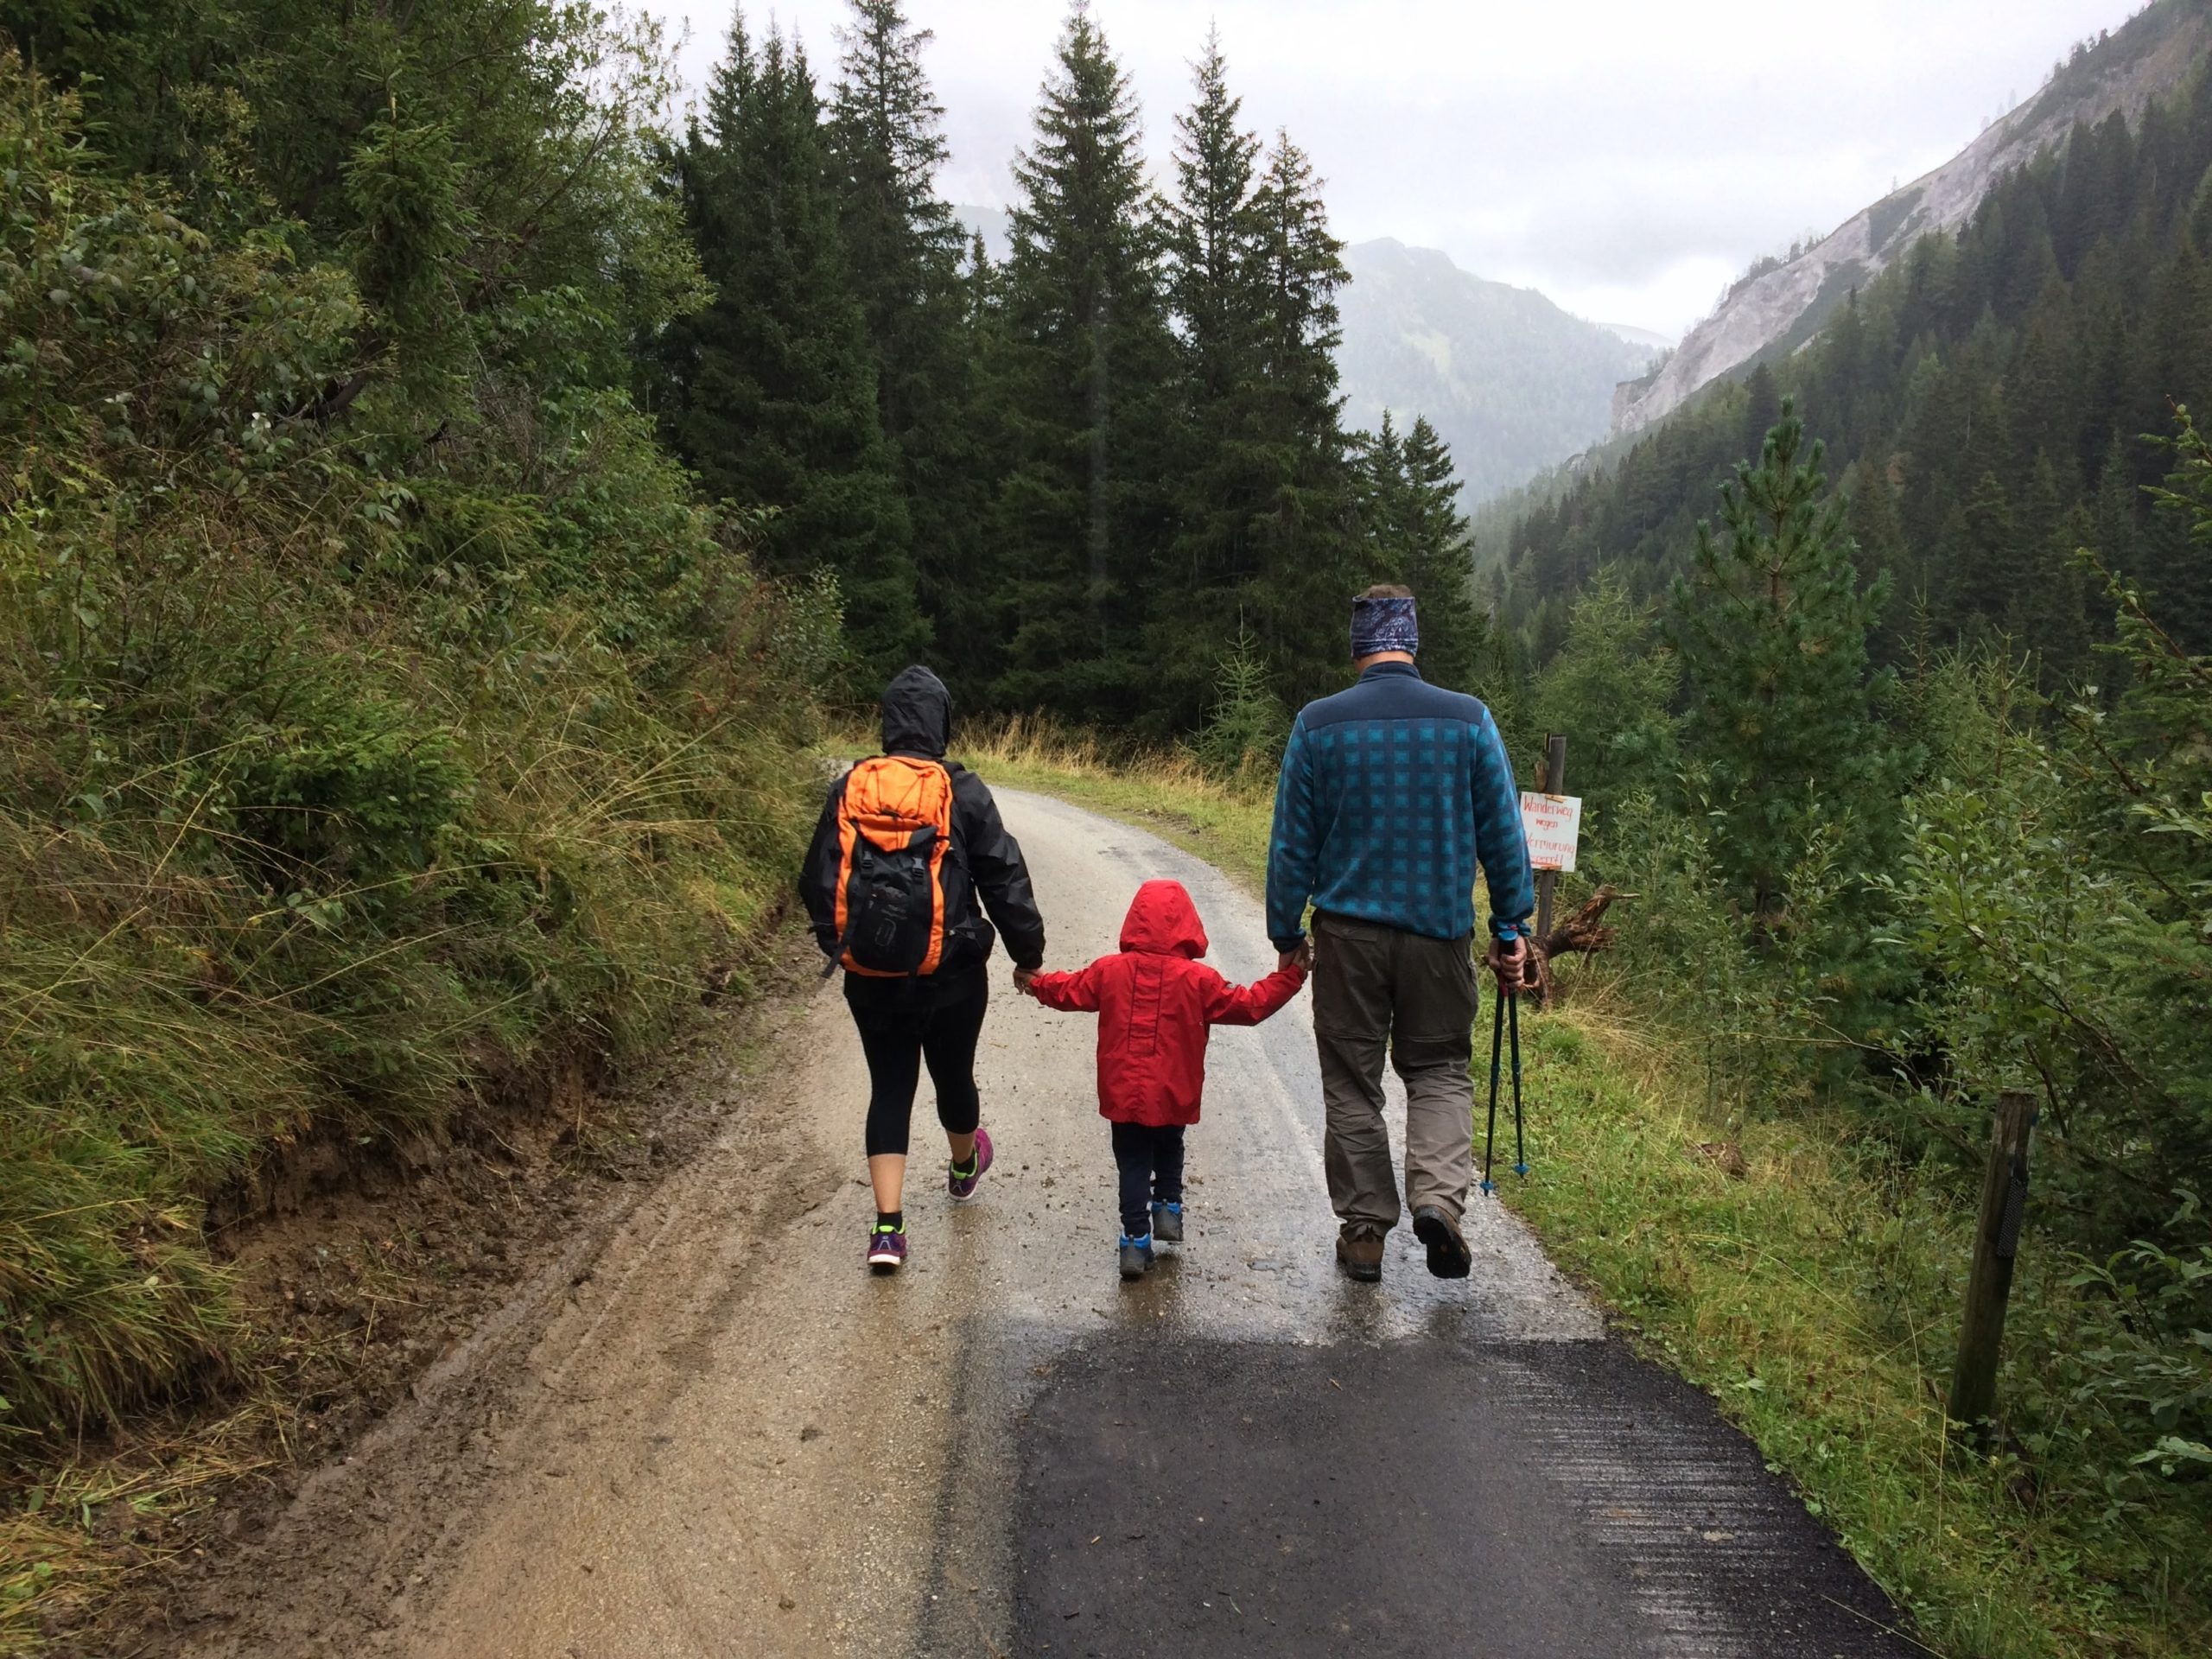 빗속을 걷고 있는 두 부모와 그 사이에 아이가 있습니다. 아이는 밝은 빨간색 비옷을 입고 모두가 손을 잡고 있습니다. 산길을 따라 걷다